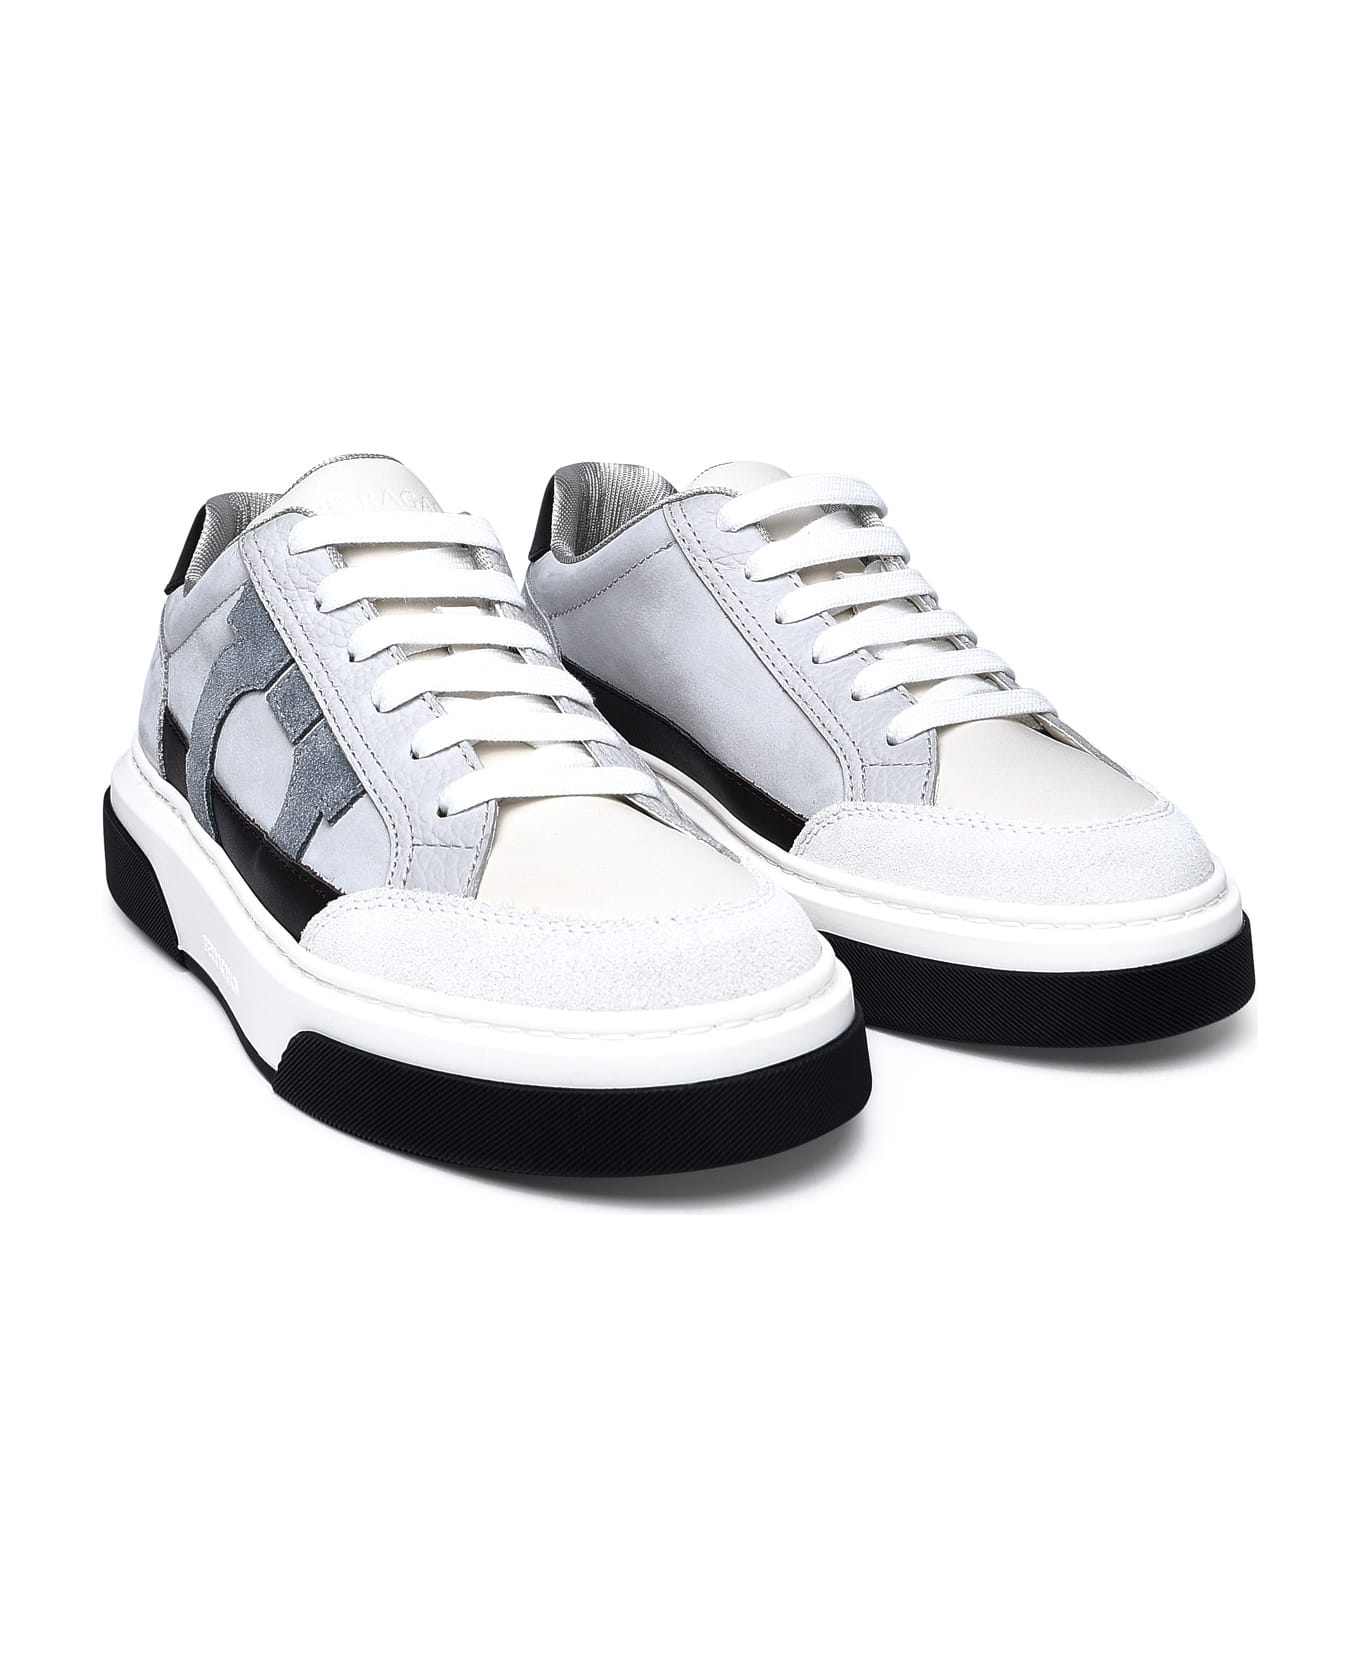 Ferragamo Multicolor Nappa Leather Sneakers - White